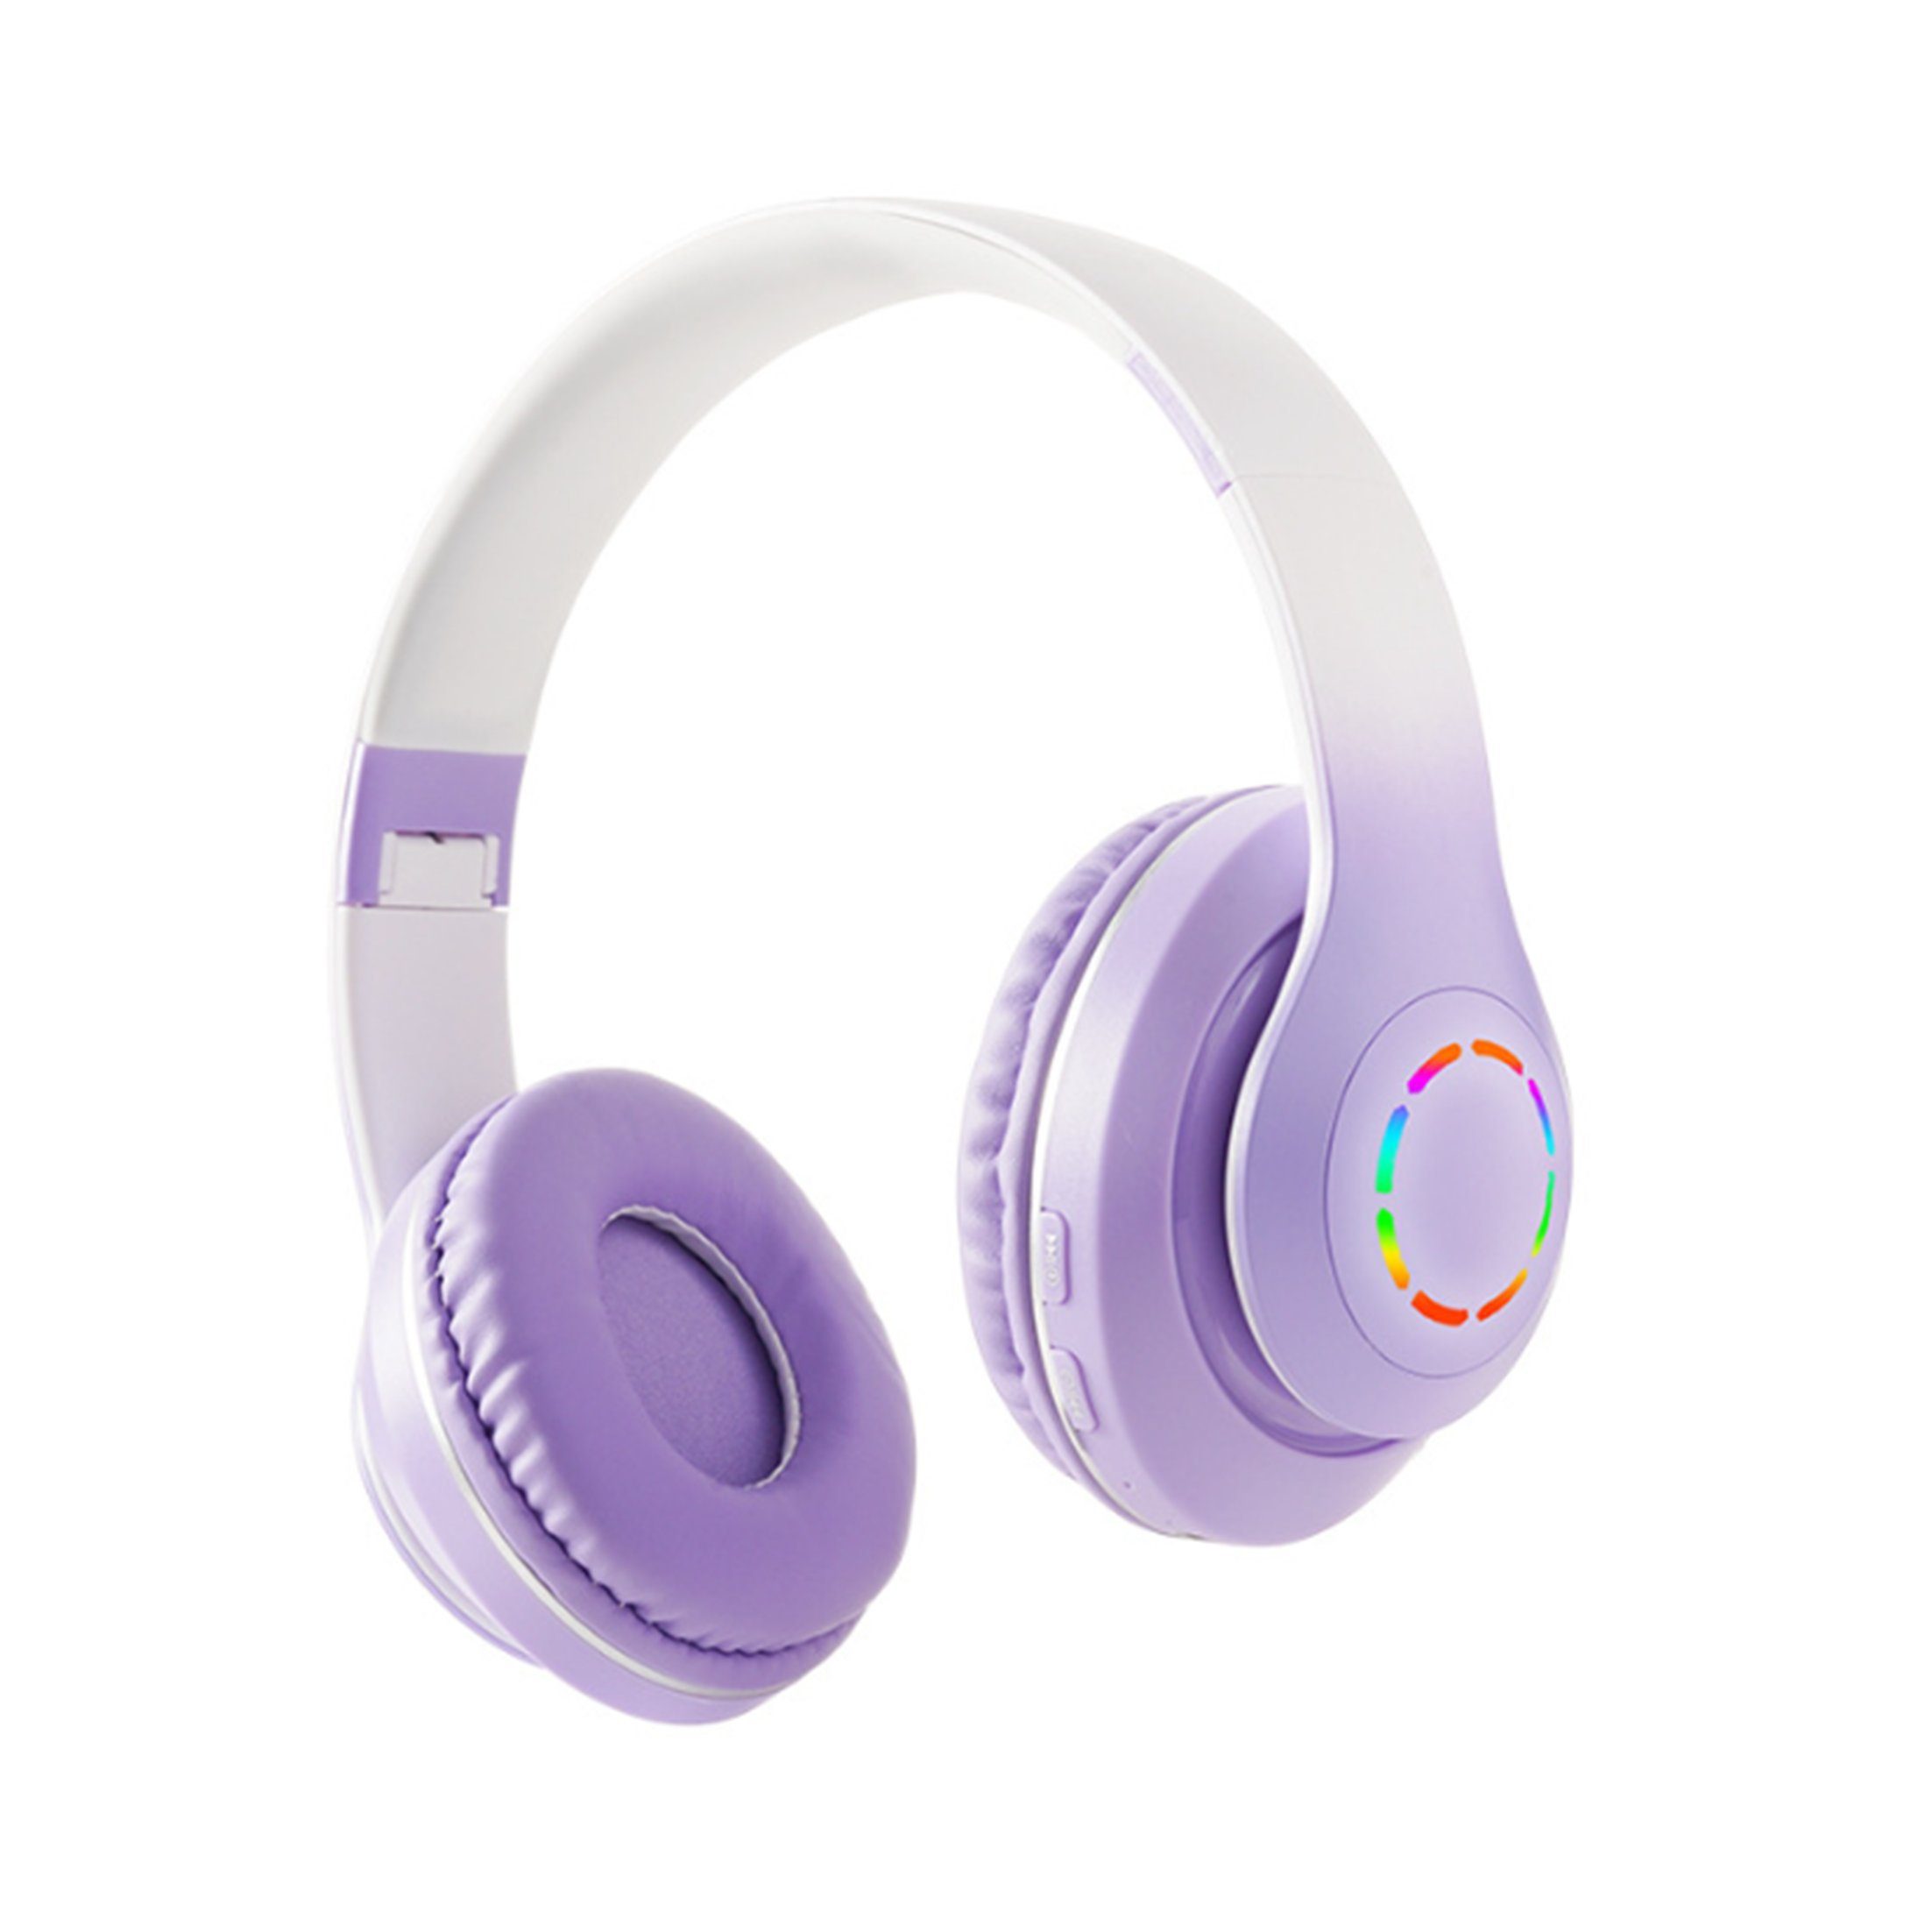 Diida Kopfhörer,Bluetooth-Kopfhörer,Over Ear Kabelloses Headset Funk-Kopfhörer Farbverlauf Lila